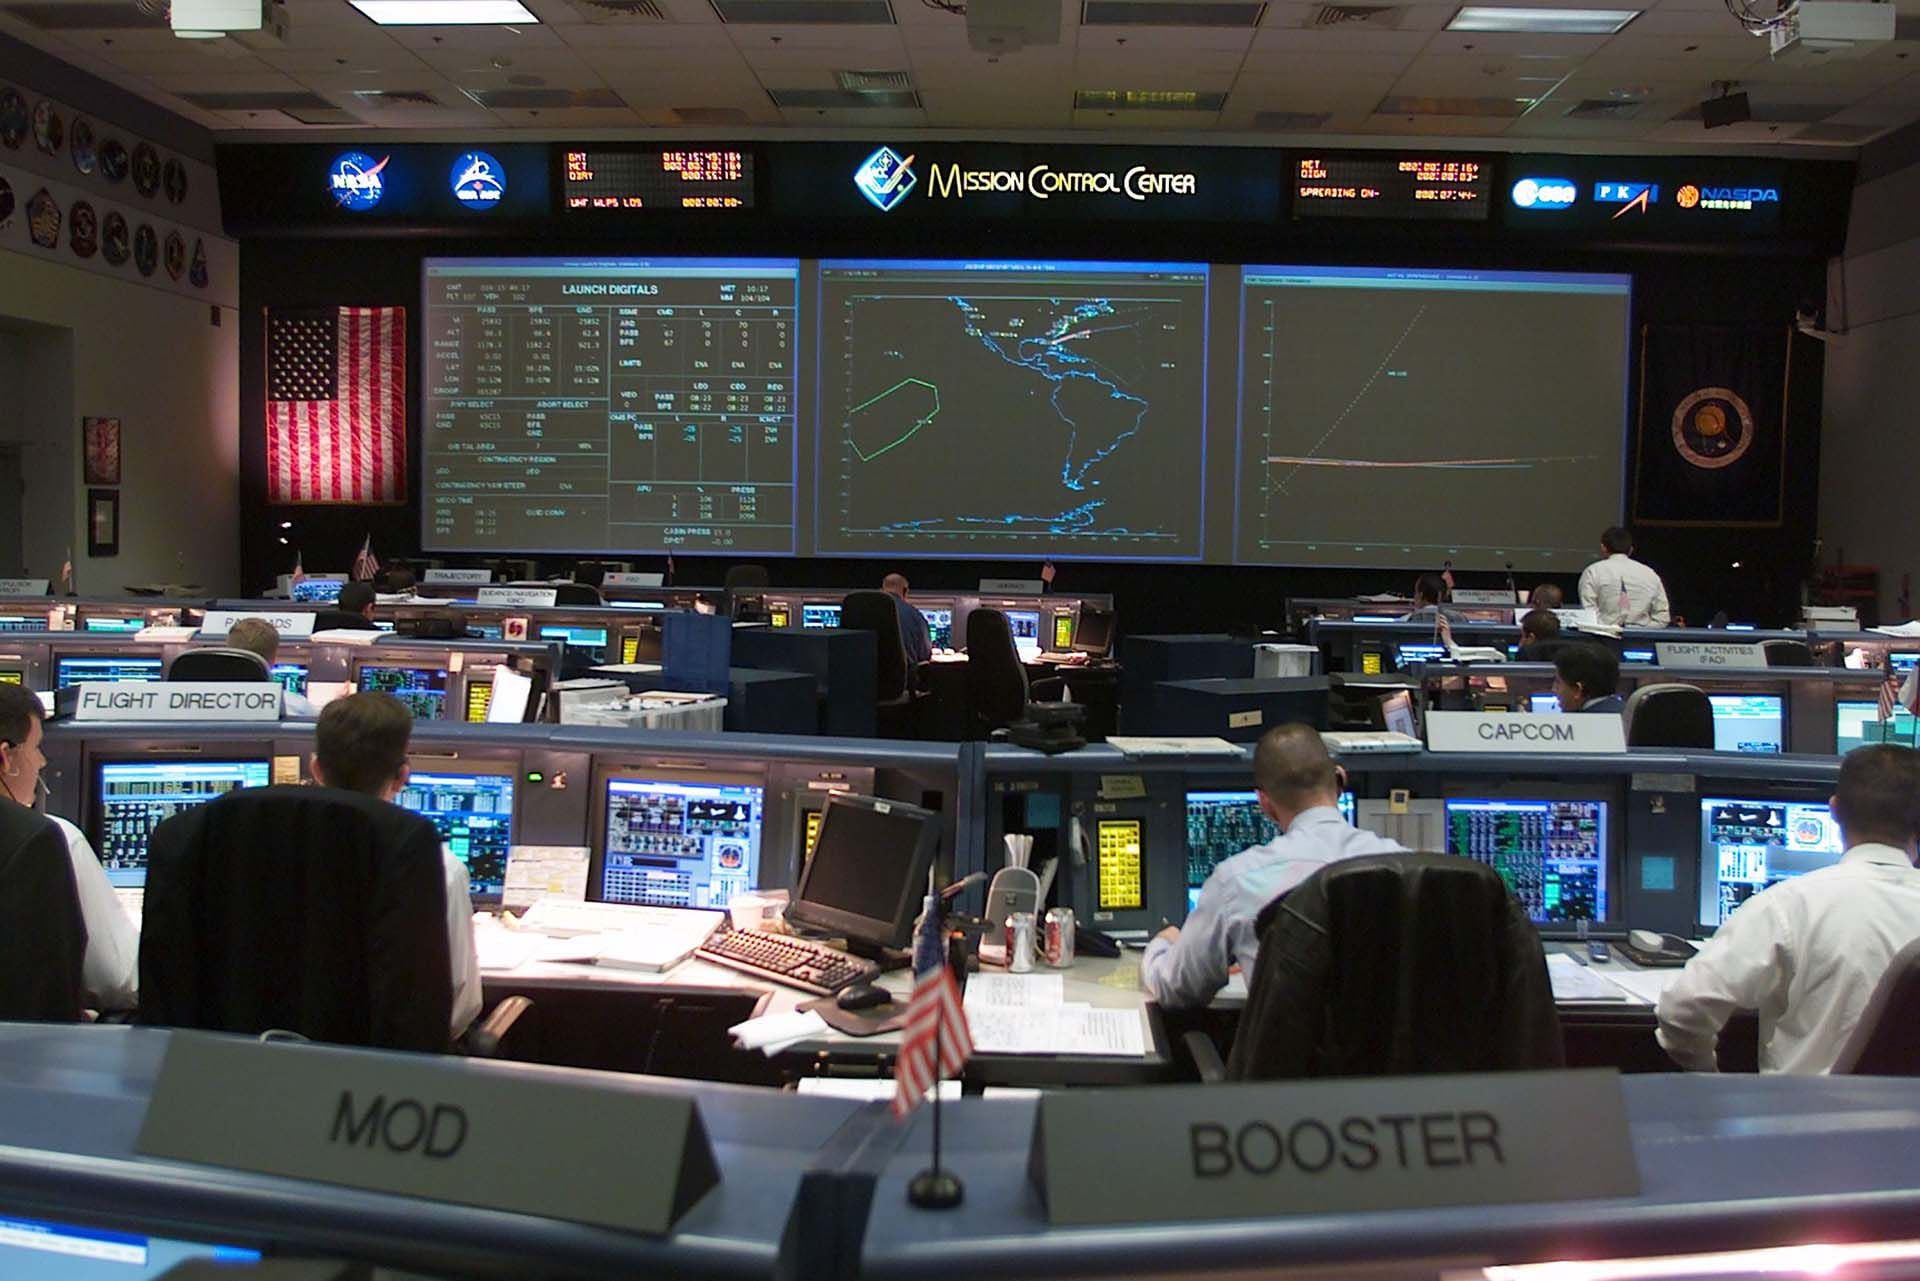 Los científicos monitorean a los astronautas fuera de la Tierra  (Photo by NASA/Getty Images)